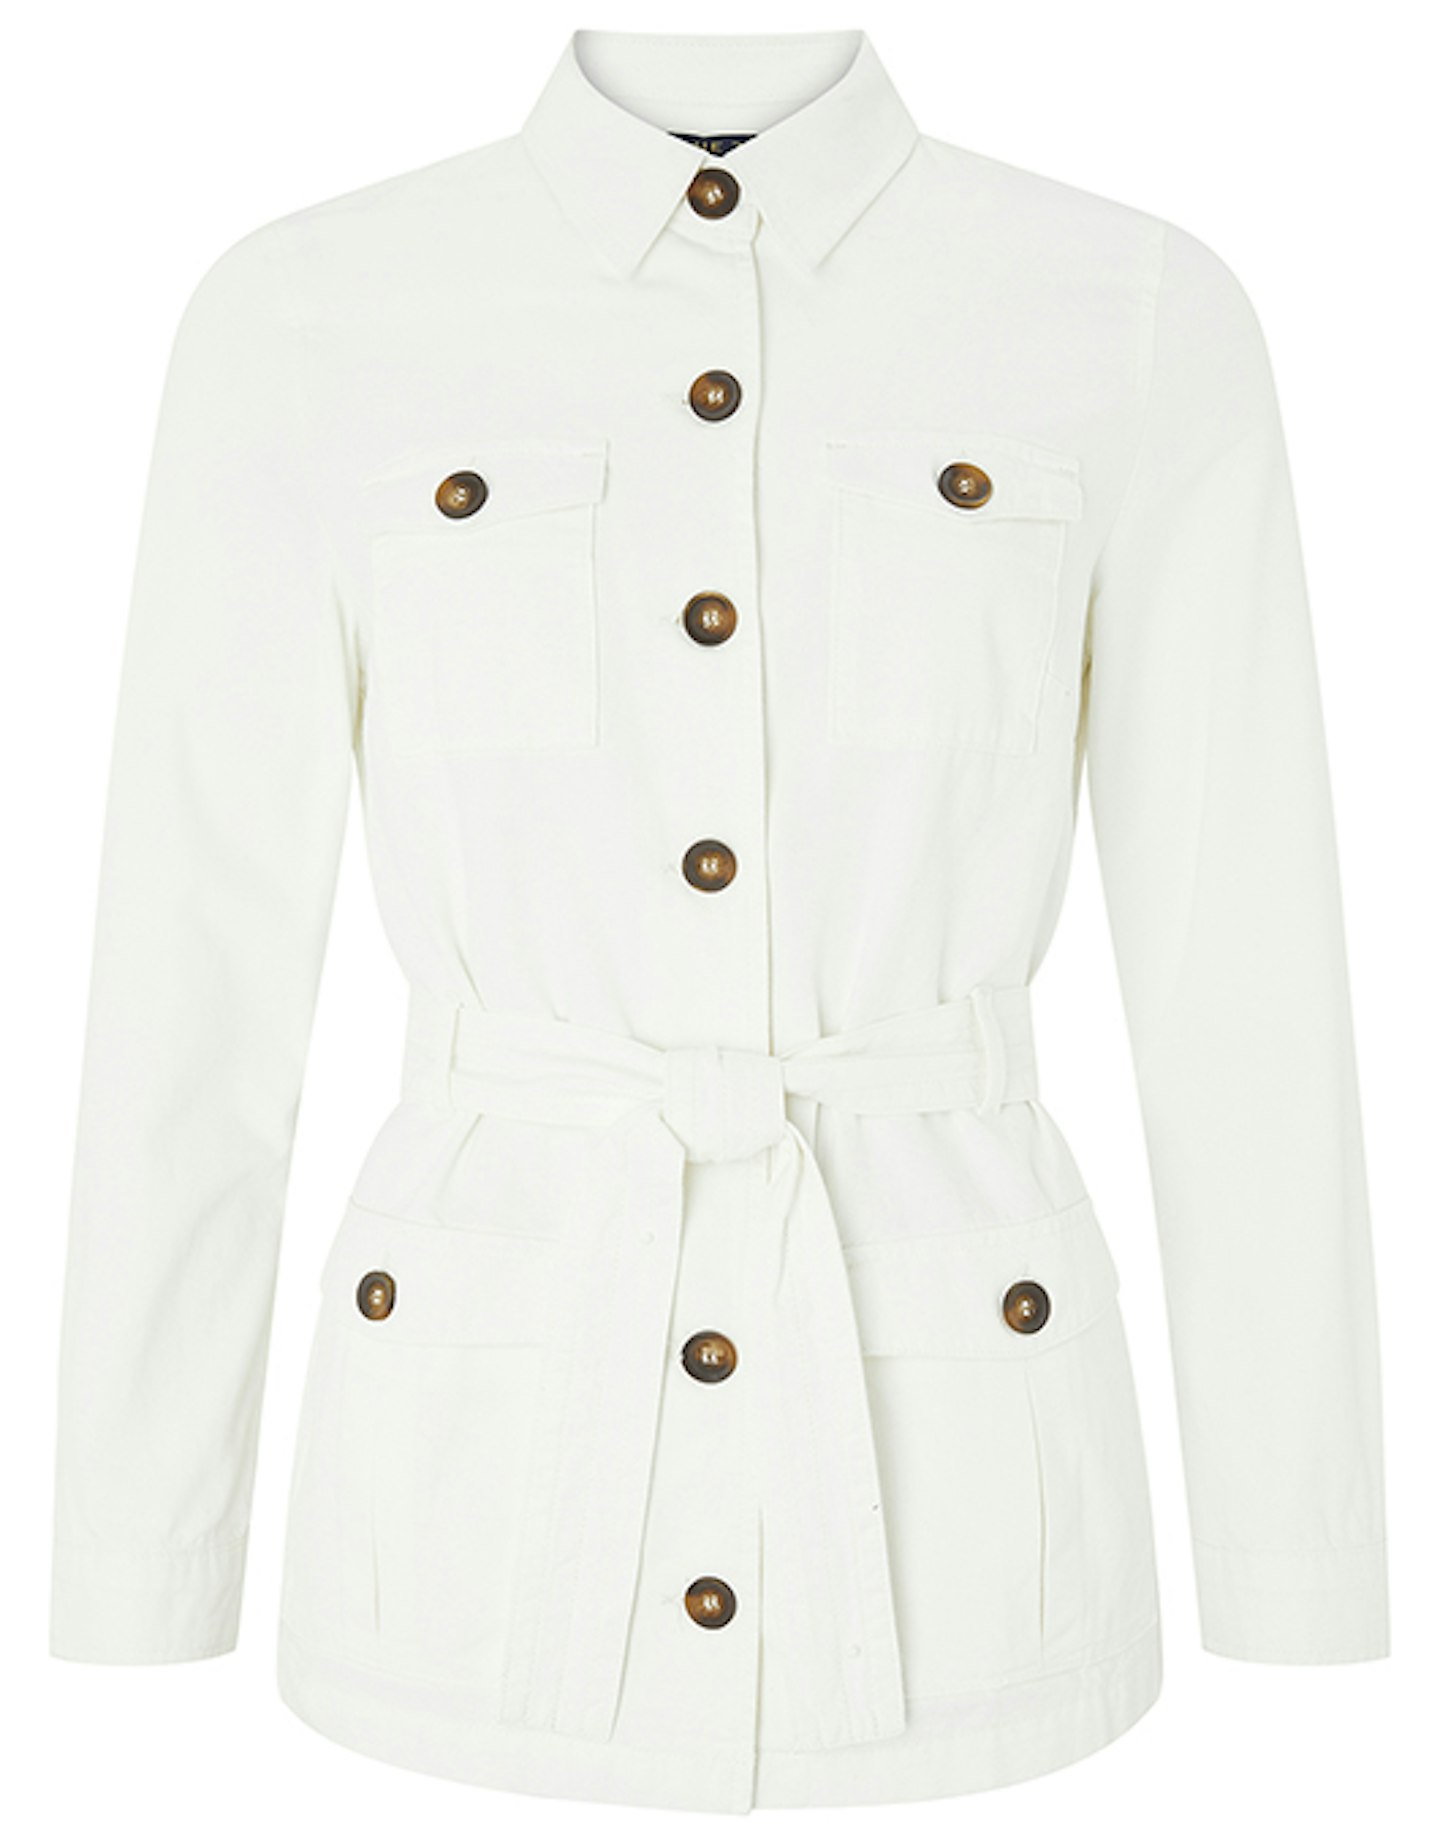 Monsoon, Belted White Jacket, £55